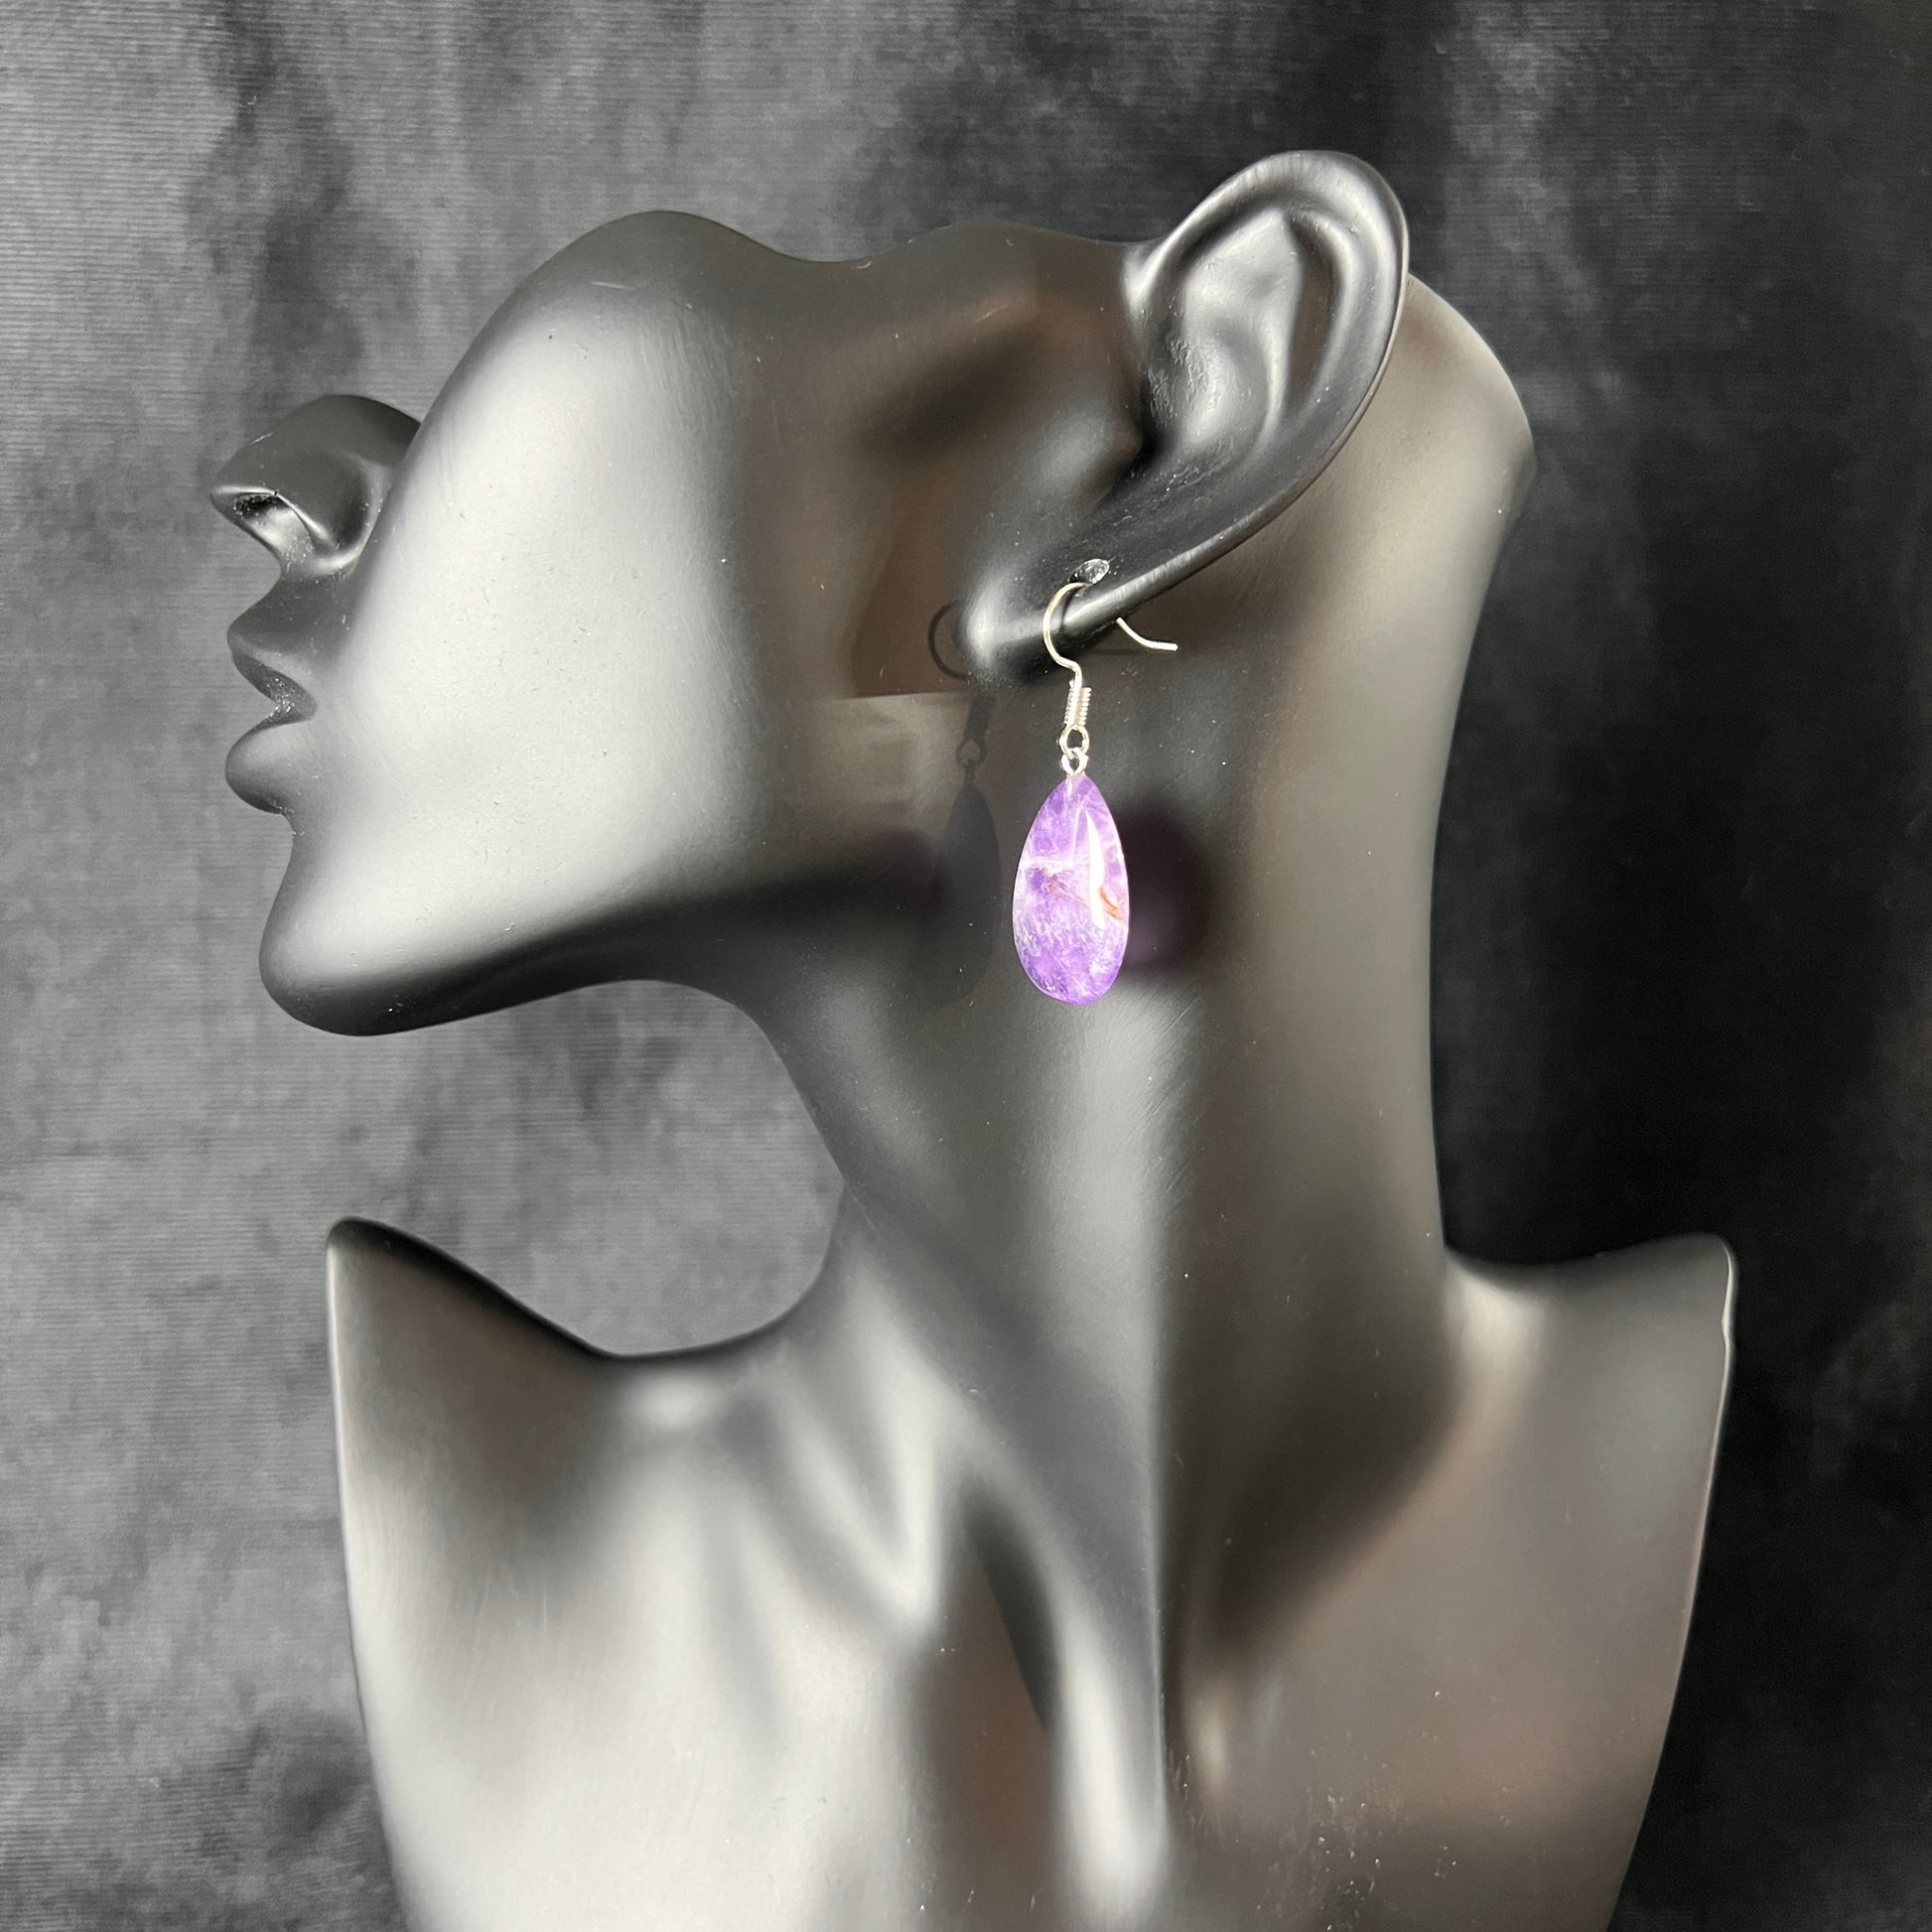 Crystal earrings amethyst jewelry teardrop earrings minimalist dainty earrings amethyst earrings